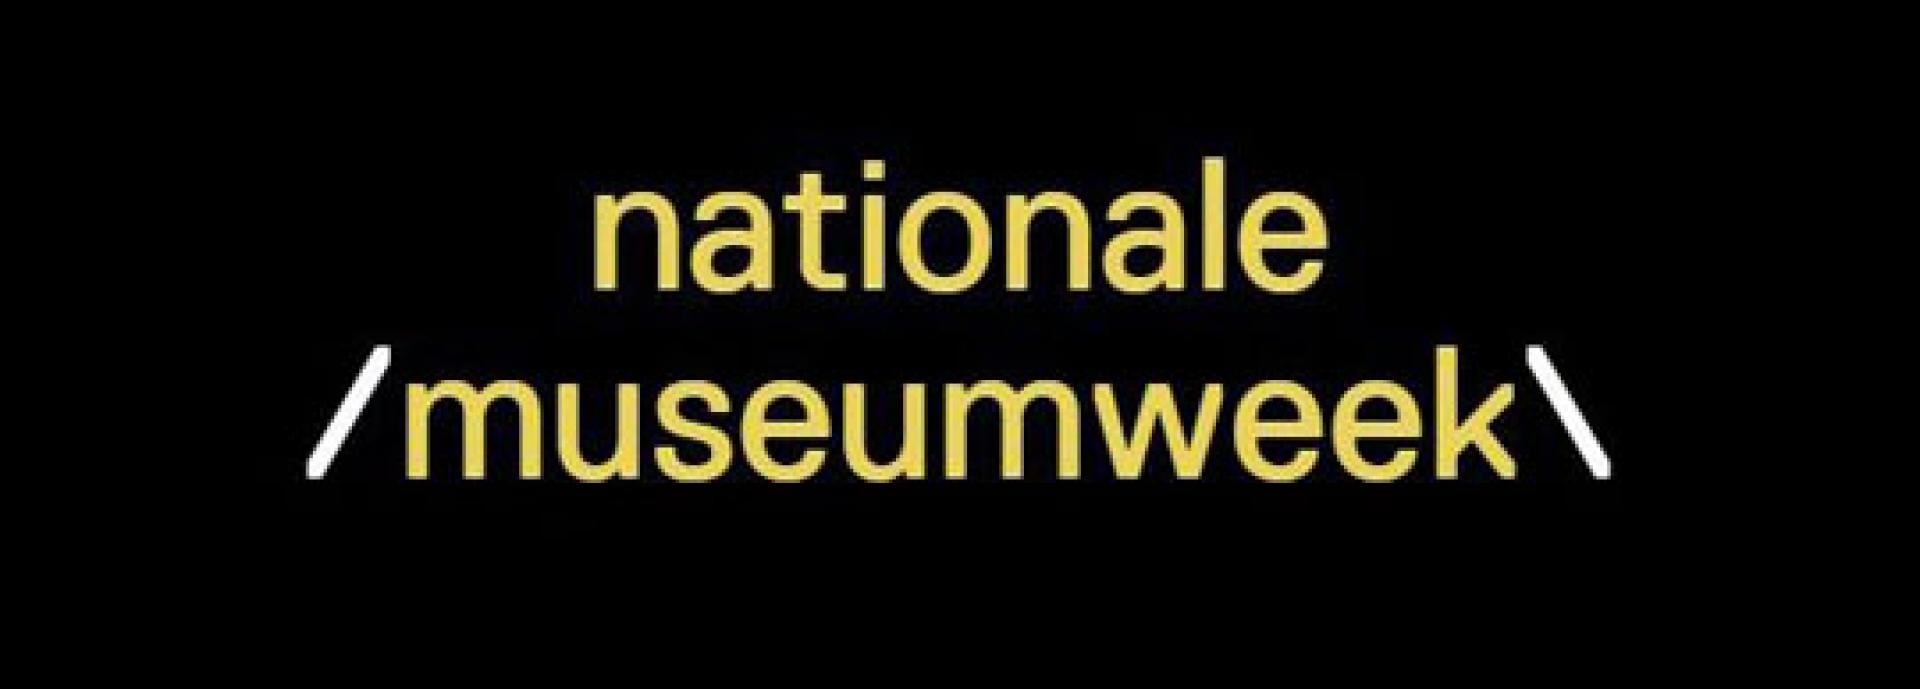 National Museum Week